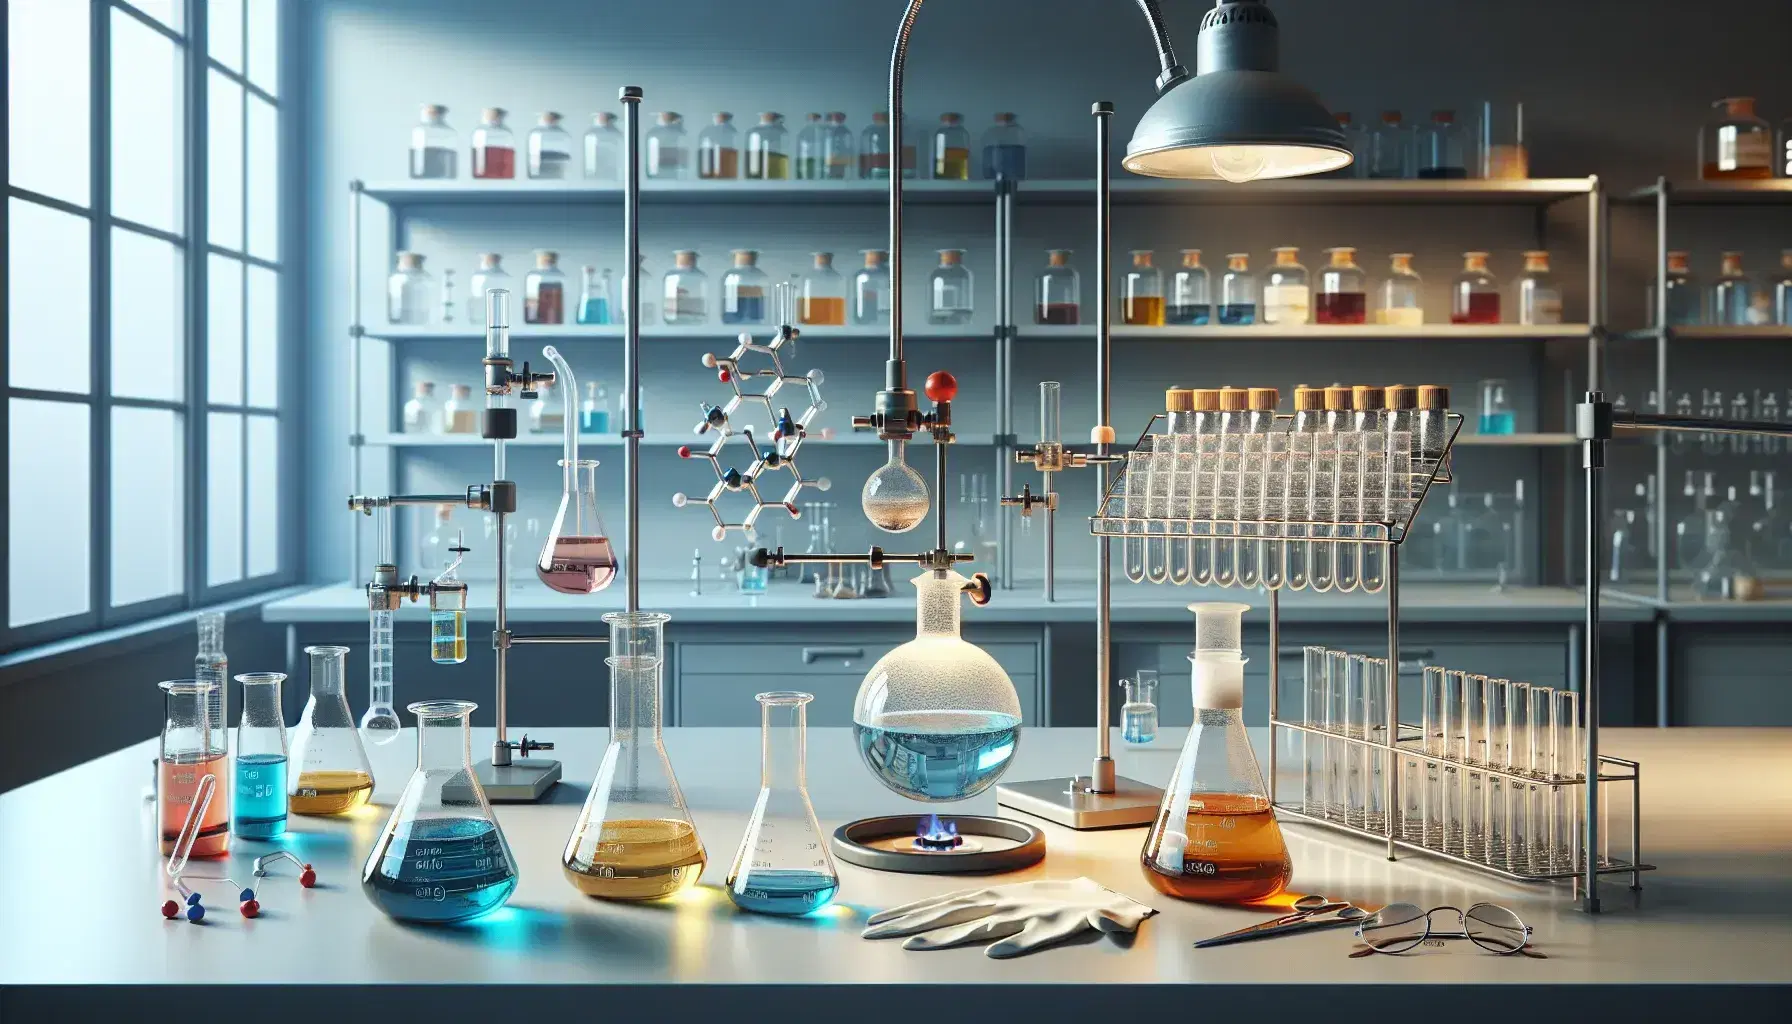 Laboratorio de química con matraces Erlenmeyer de líquidos coloridos, embudo de separación, quemador Bunsen y estantes con frascos y equipo de seguridad.